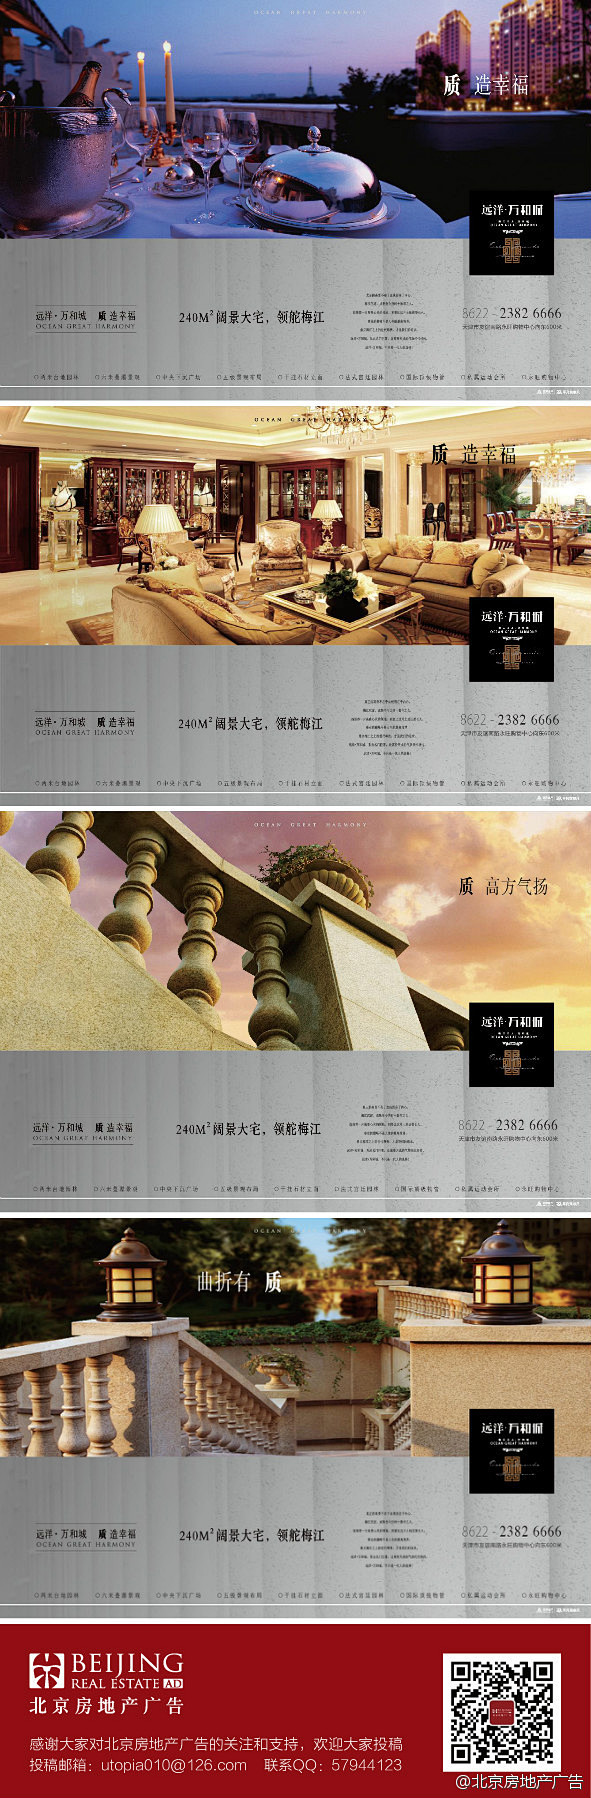 北京房地产广告的照片 - 微相册